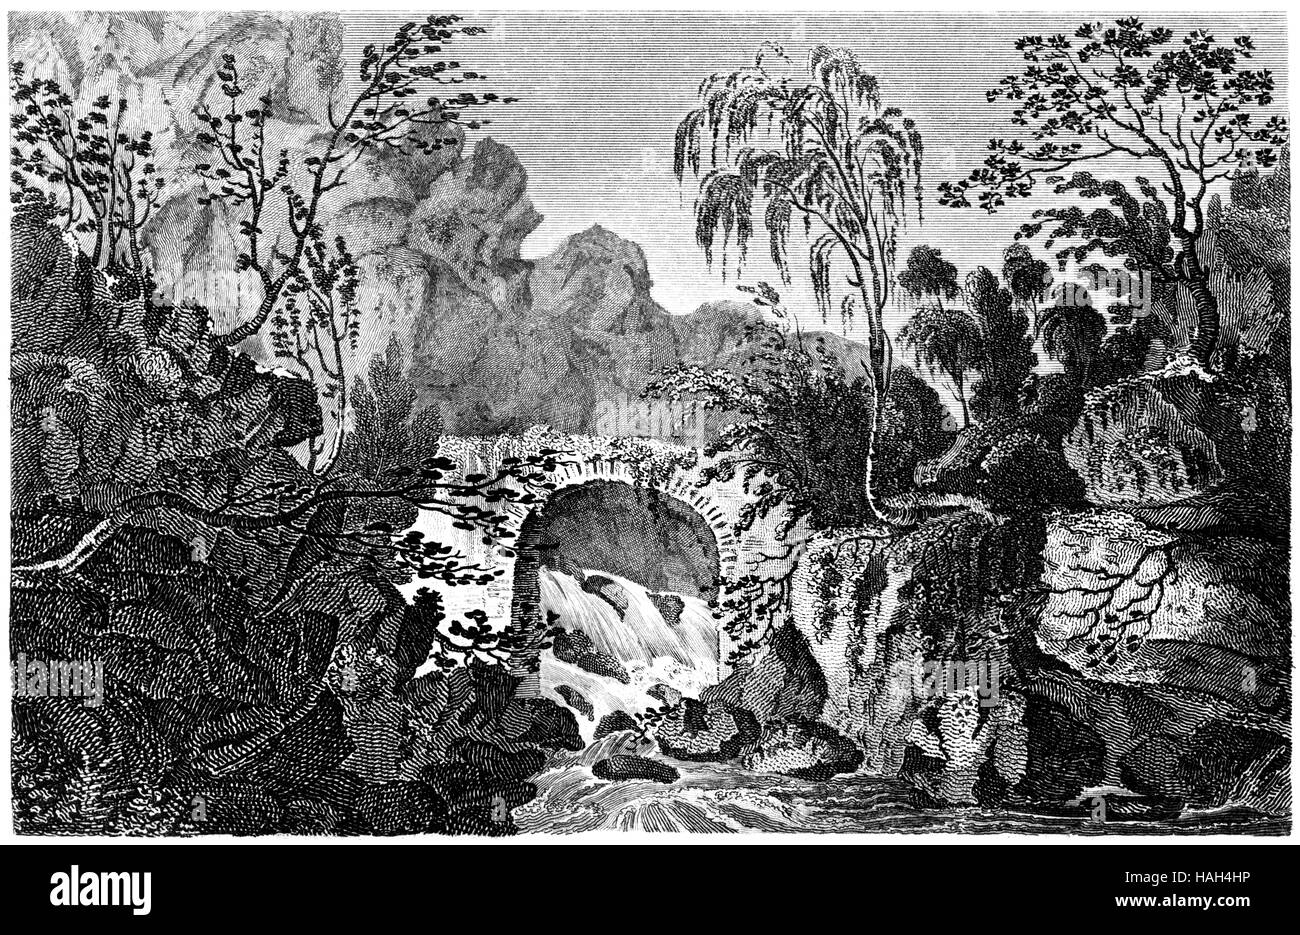 Eine Gravur der Pont Y Prydd oder der neue Bidge über die Fuchsfalle gescannt Glamorganshire in hoher Auflösung aus einem Buch, gedruckt im Jahre 1812. Stockfoto